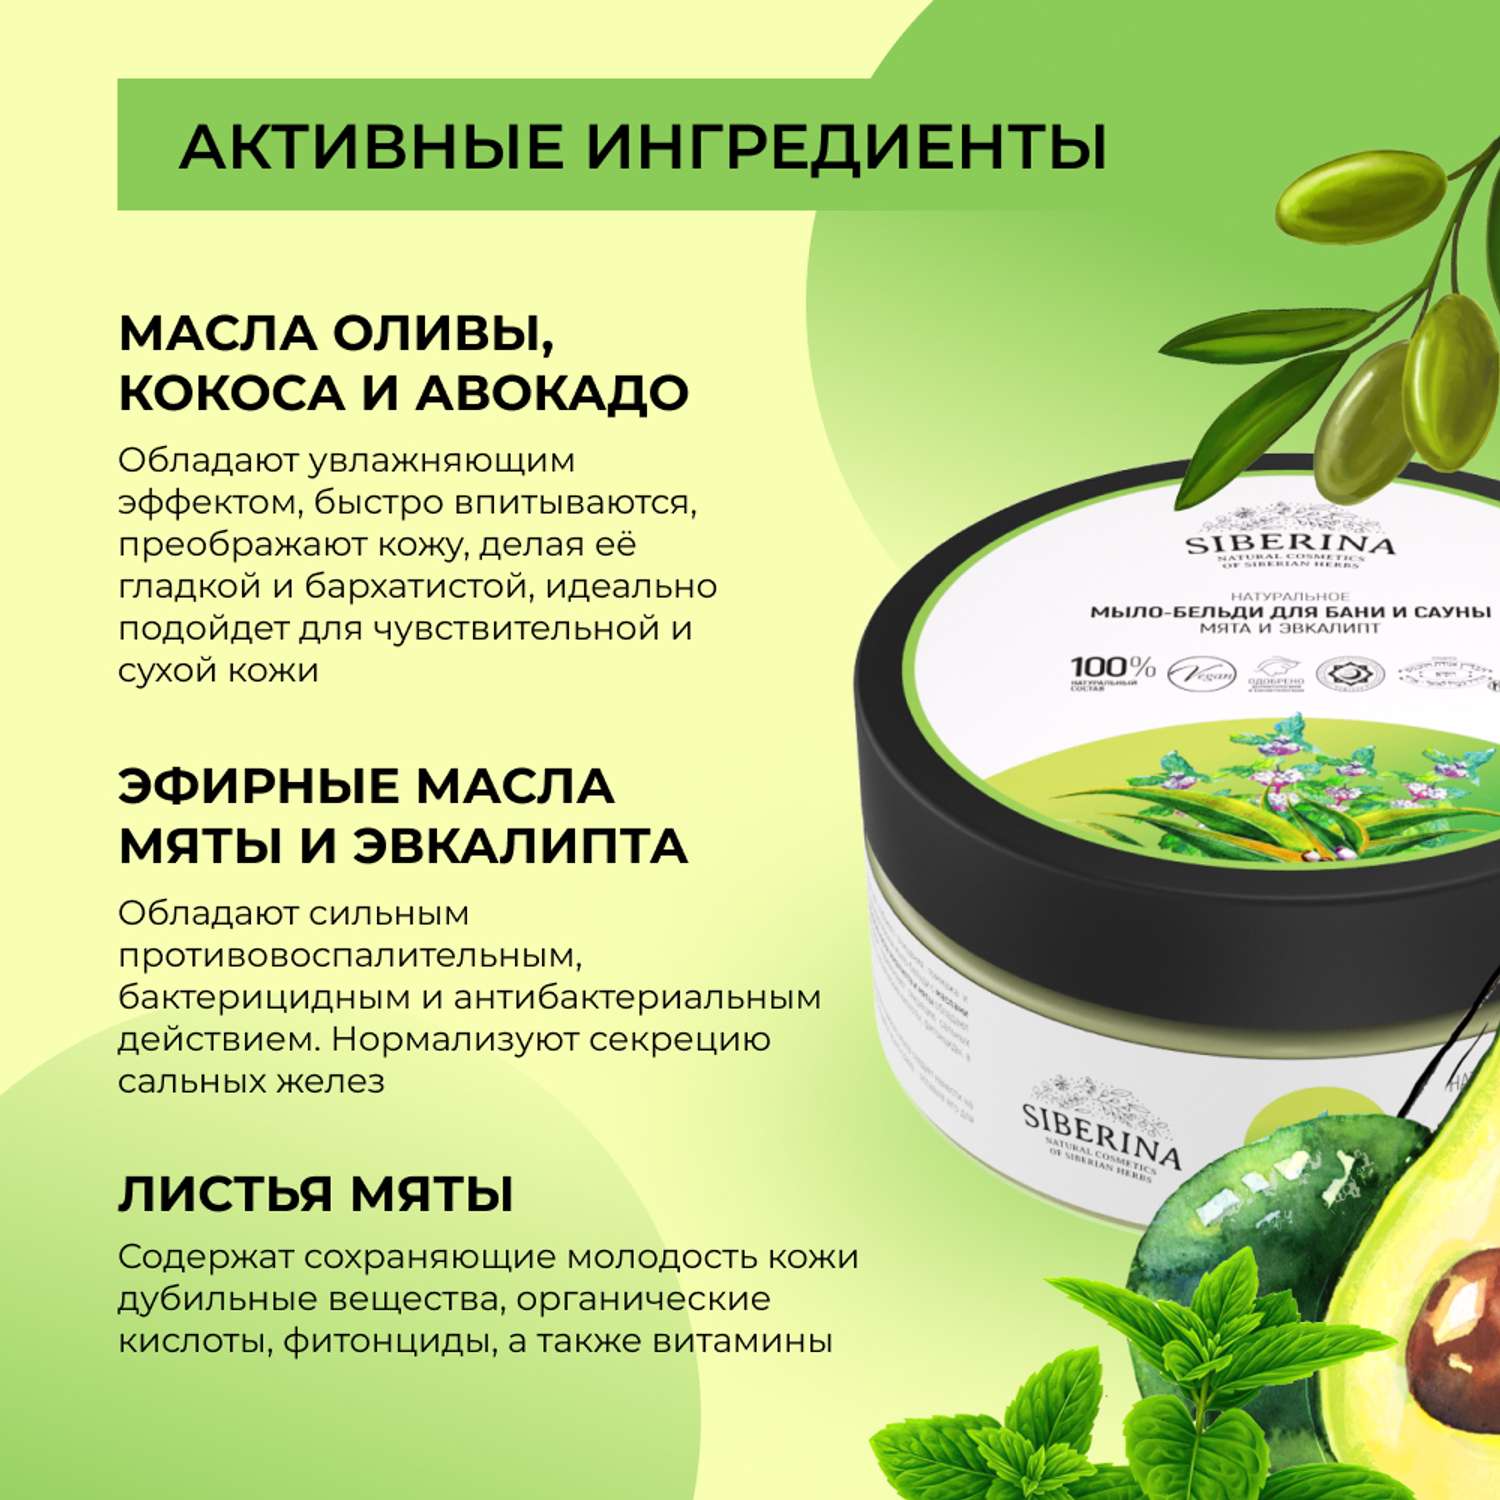 Мыло-бельди Siberina натуральное «Мята и эвкалипт» для бани и сауны 170 г - фото 4